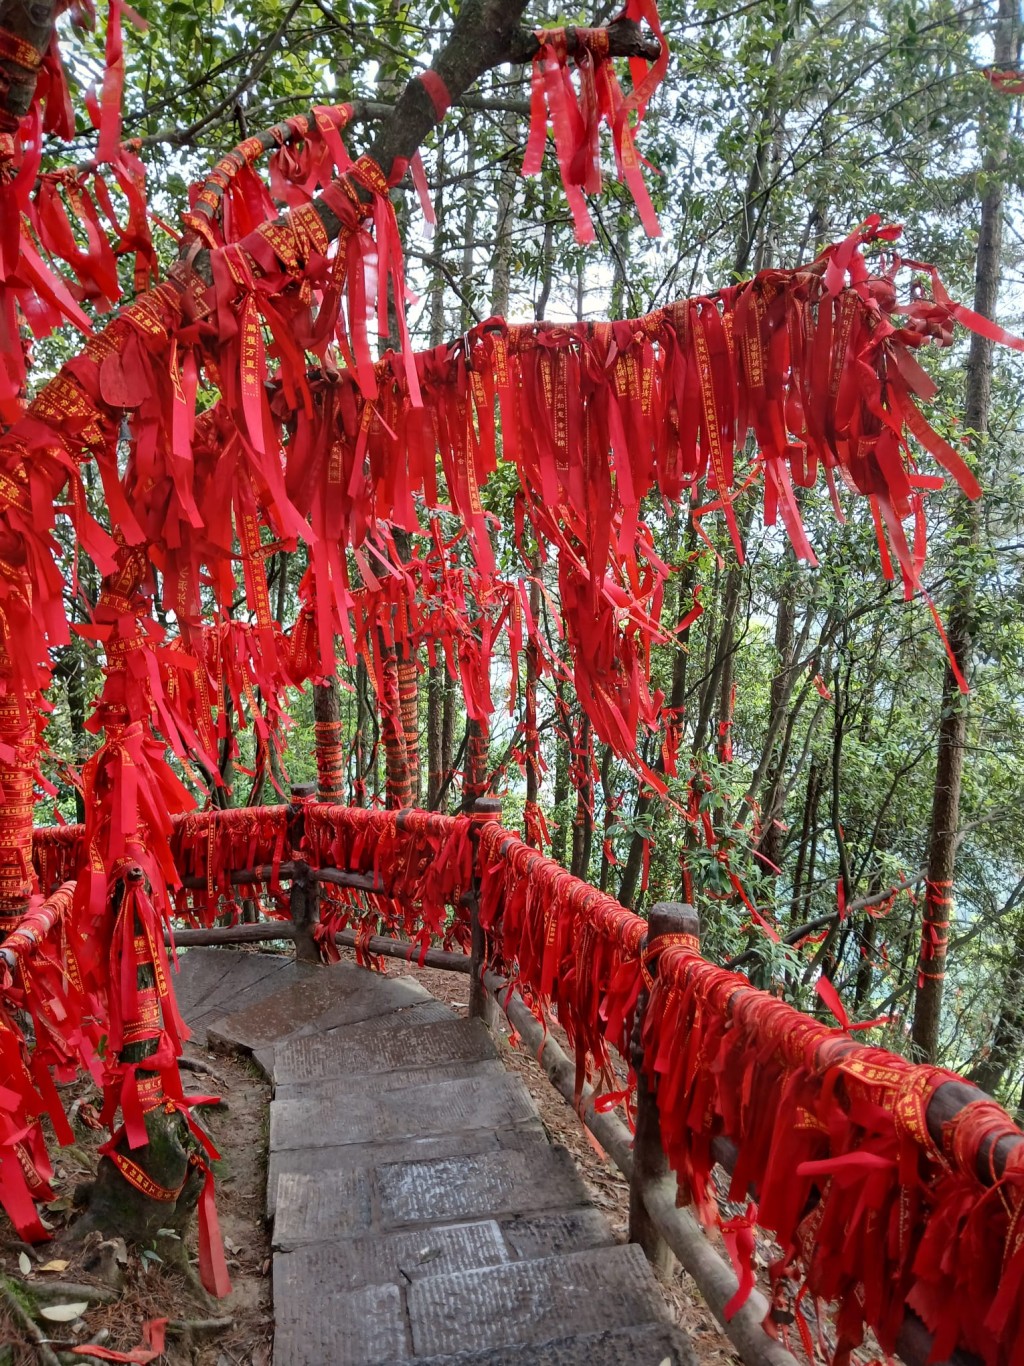 系满红丝带的张家界天然石桥「天下第一桥」是袁家界的另一景点。